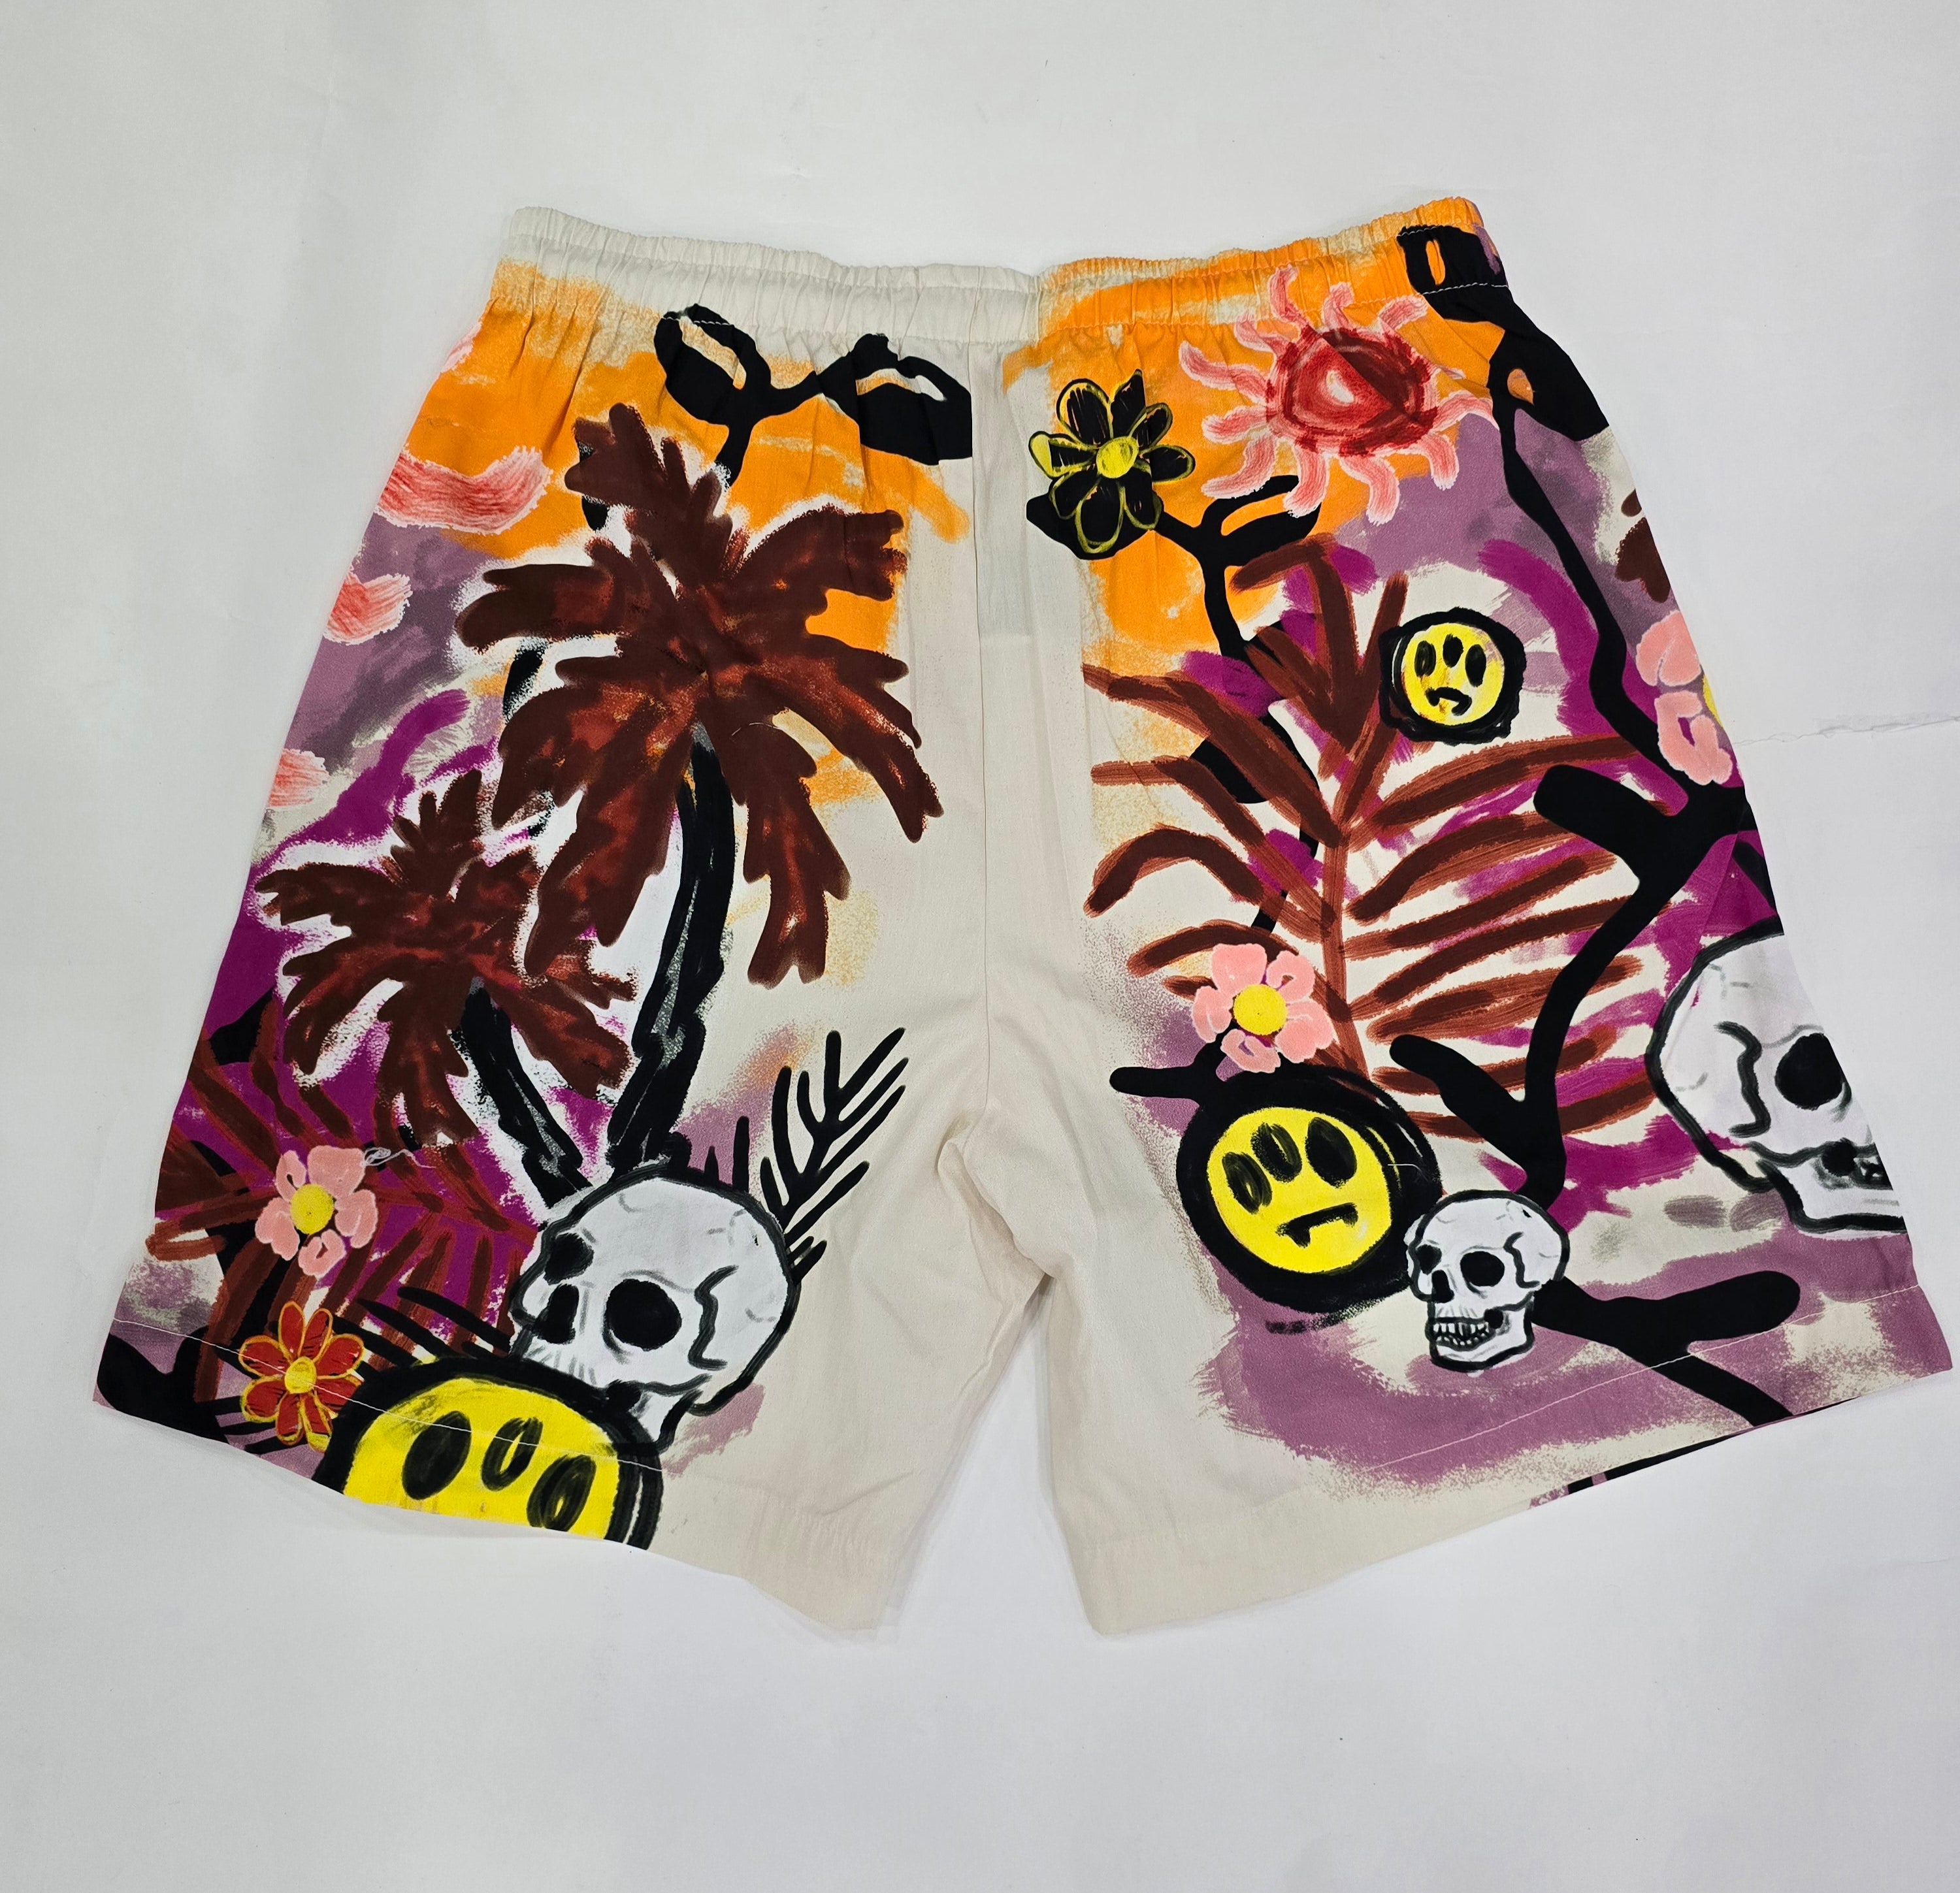 Barrow Bermuda Shorts in Poplin with Multicolor Print